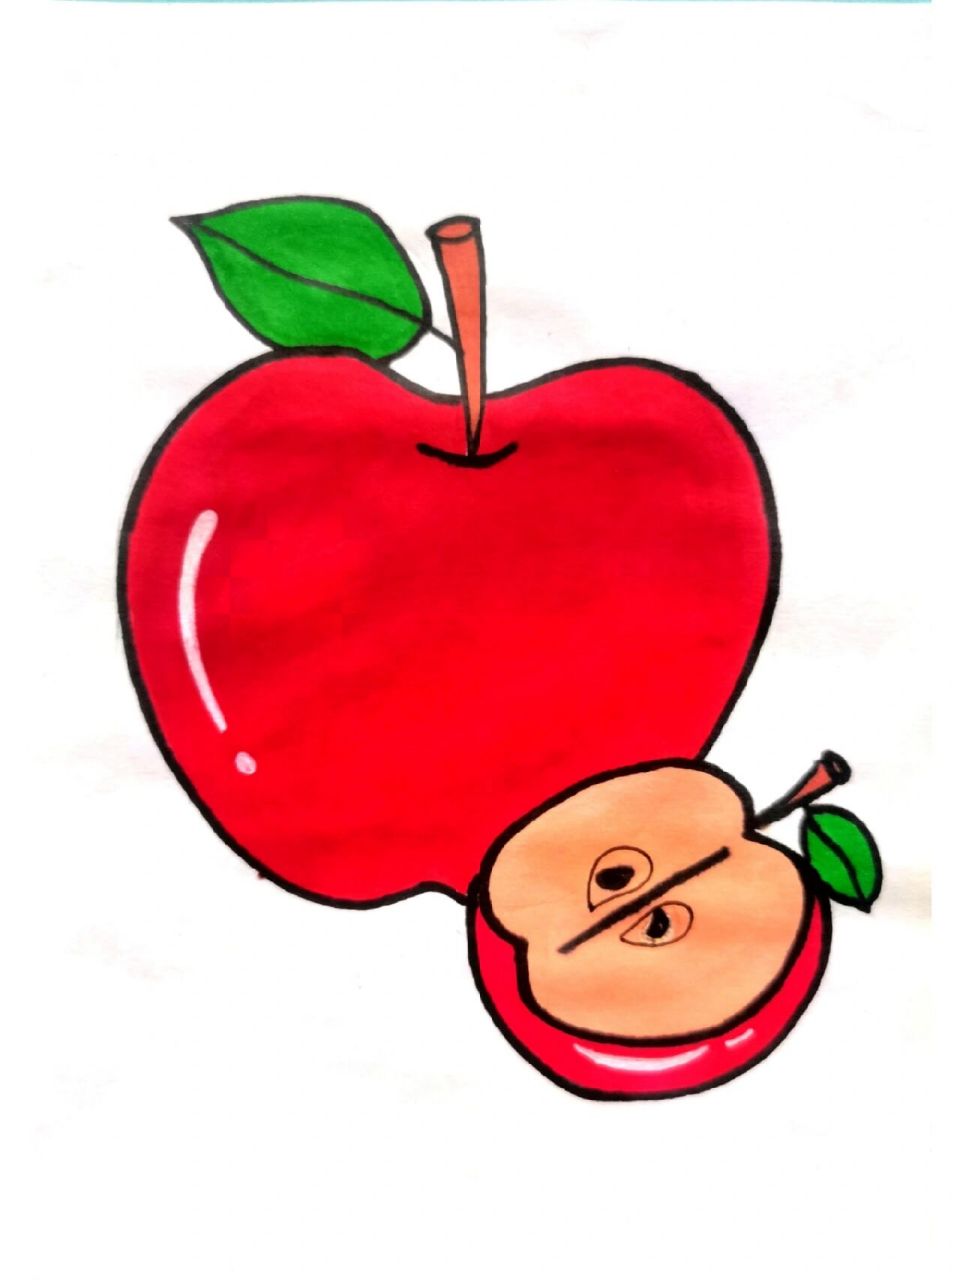 苹果简笔画,水果简笔画 苹果简笔画,水果简笔画,收藏起来留给孩子画吧